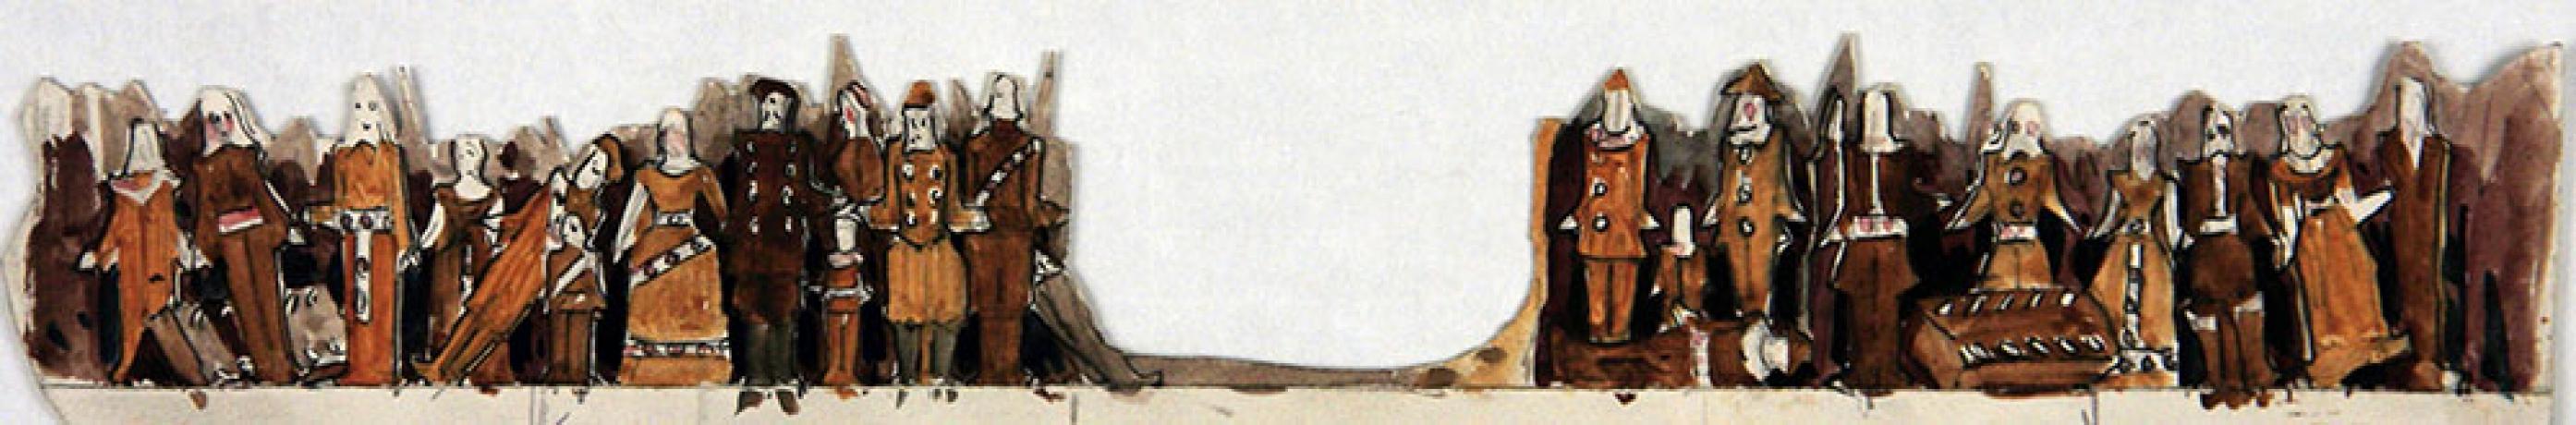 Eléments de décors de maquette en volume, mine de plomb et gouache sur carton par Jules Le Goff - 1900 - 48fi62